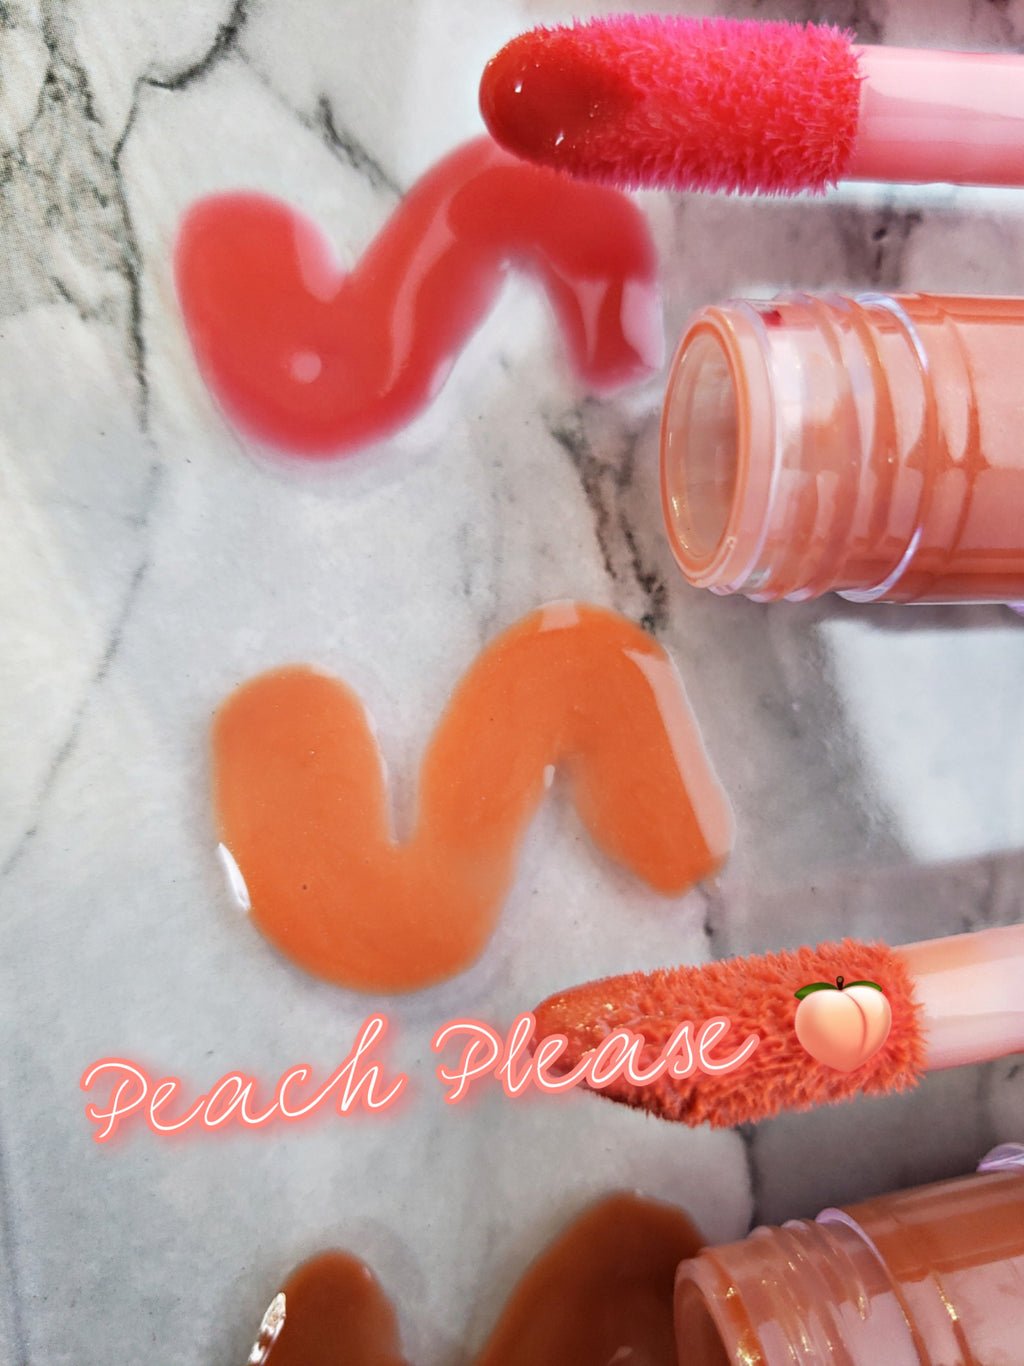 Peach Please 🍑